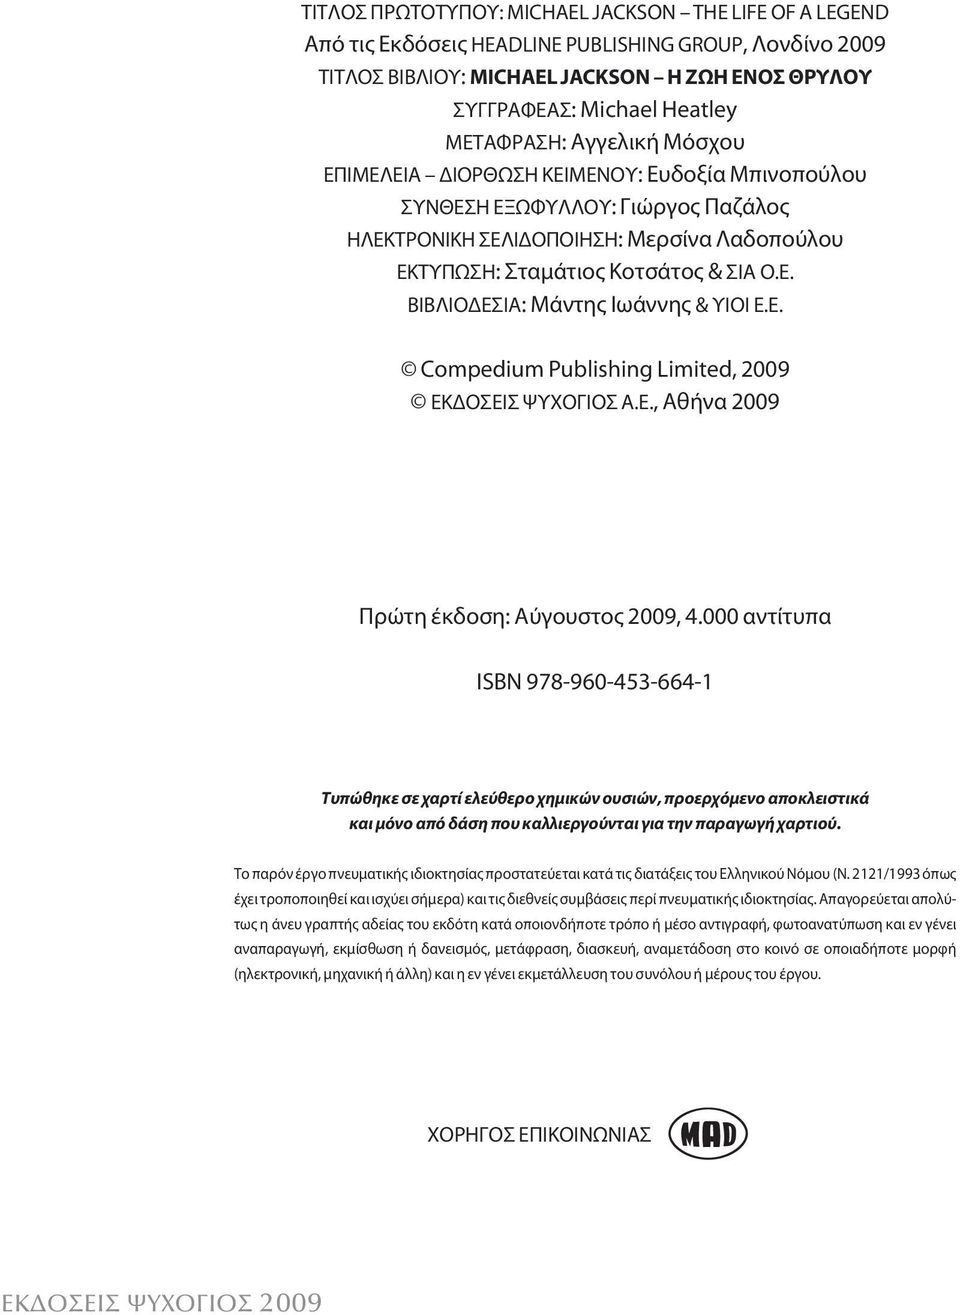 Ε. Compedium Publishing Limited, 2009 ΕΚΔΟΣΕΙΣ ΨΥΧΟΓΙΟΣ Α.Ε., Αθήνα 2009 Πρώτη έκδοση: Αύγουστος 2009, 4.